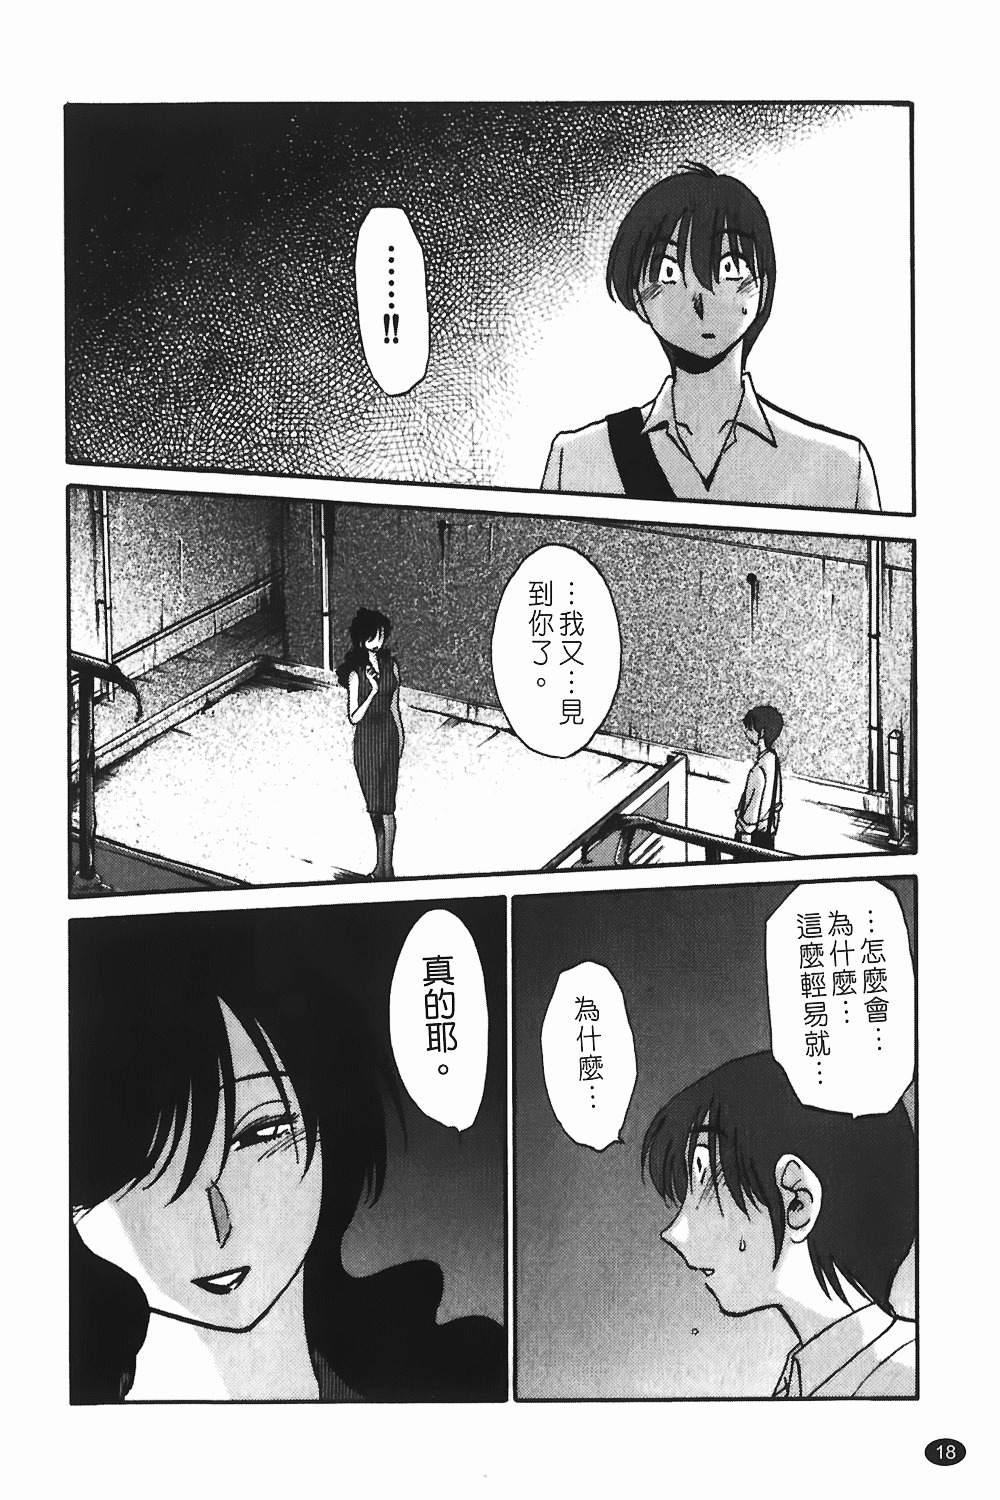 [TsuyaTsuya] Monokage no Iris 1 | 陰影中的伊利斯 1 [Chinese] page 15 full